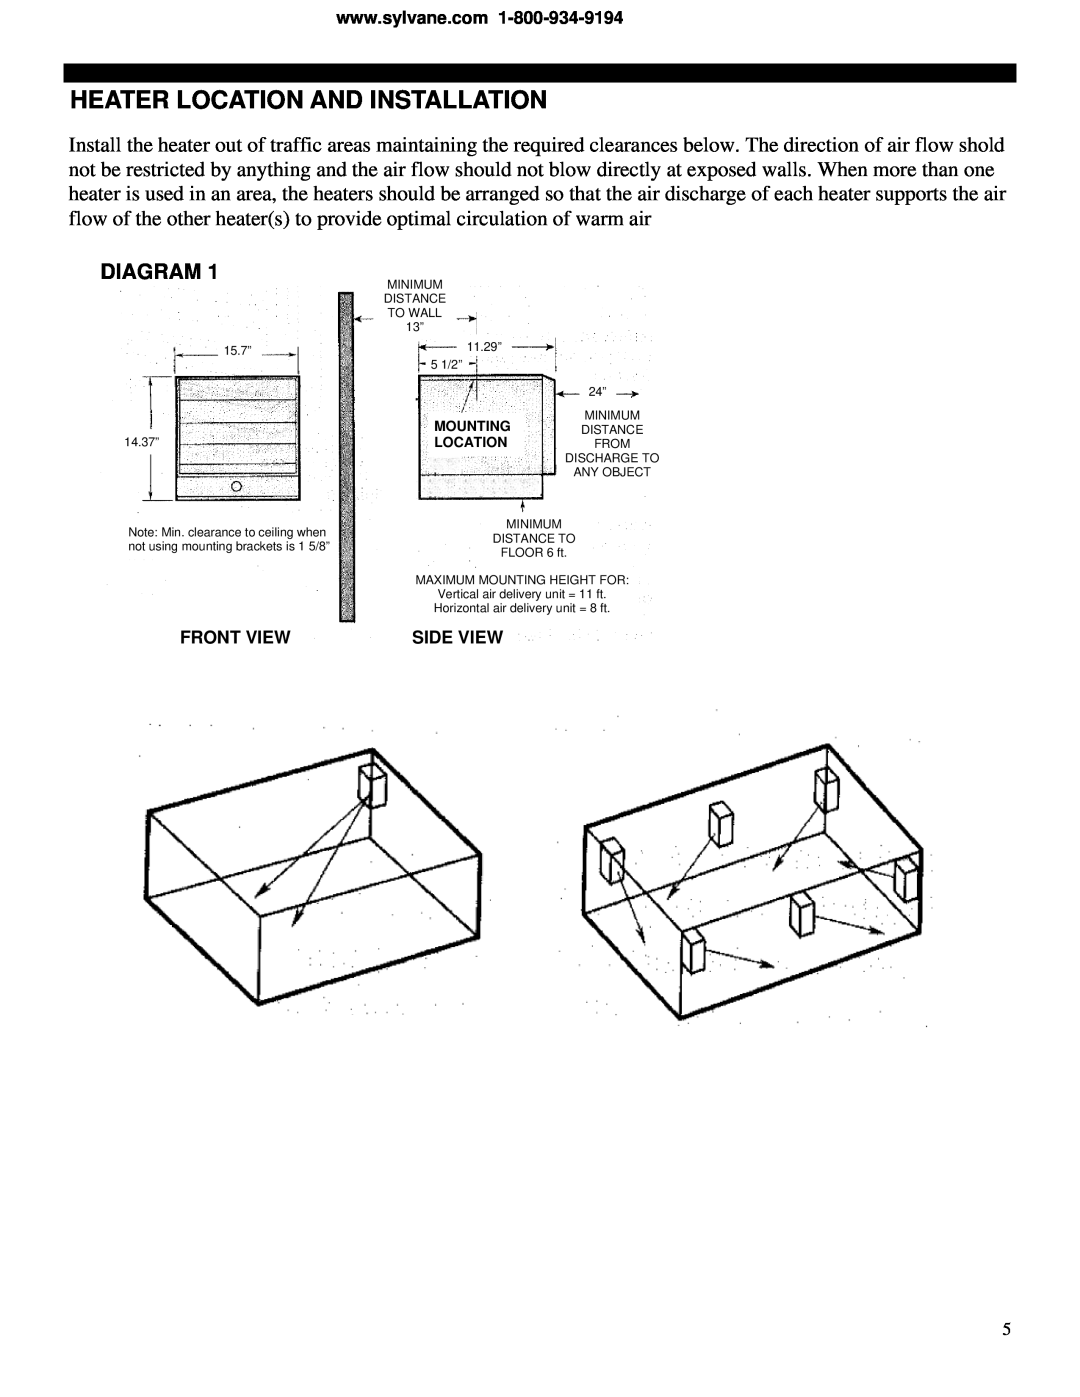 Soleus Air HI1-50-03 manual Heater Location And Installation, Diagram 